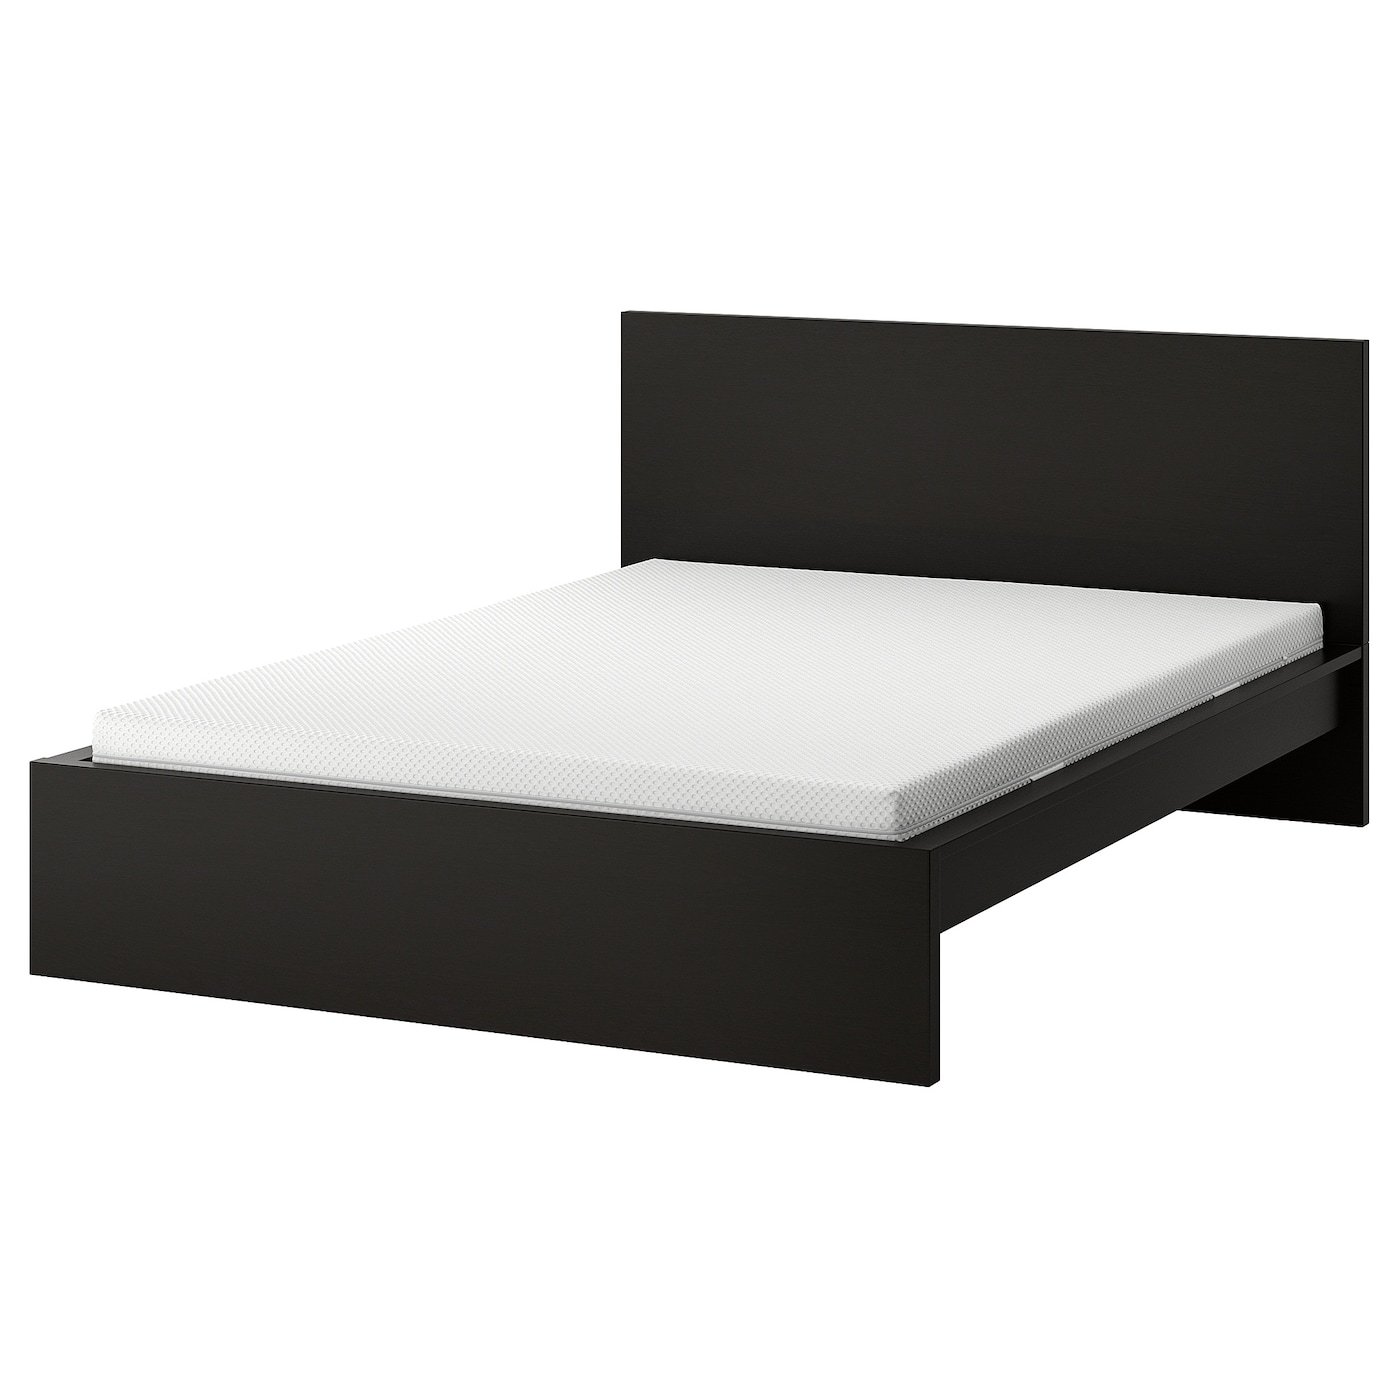 Кровать - IKEA MALM, 200х160 см, жесткий матрас,  черный, МАЛЬМ ИКЕА